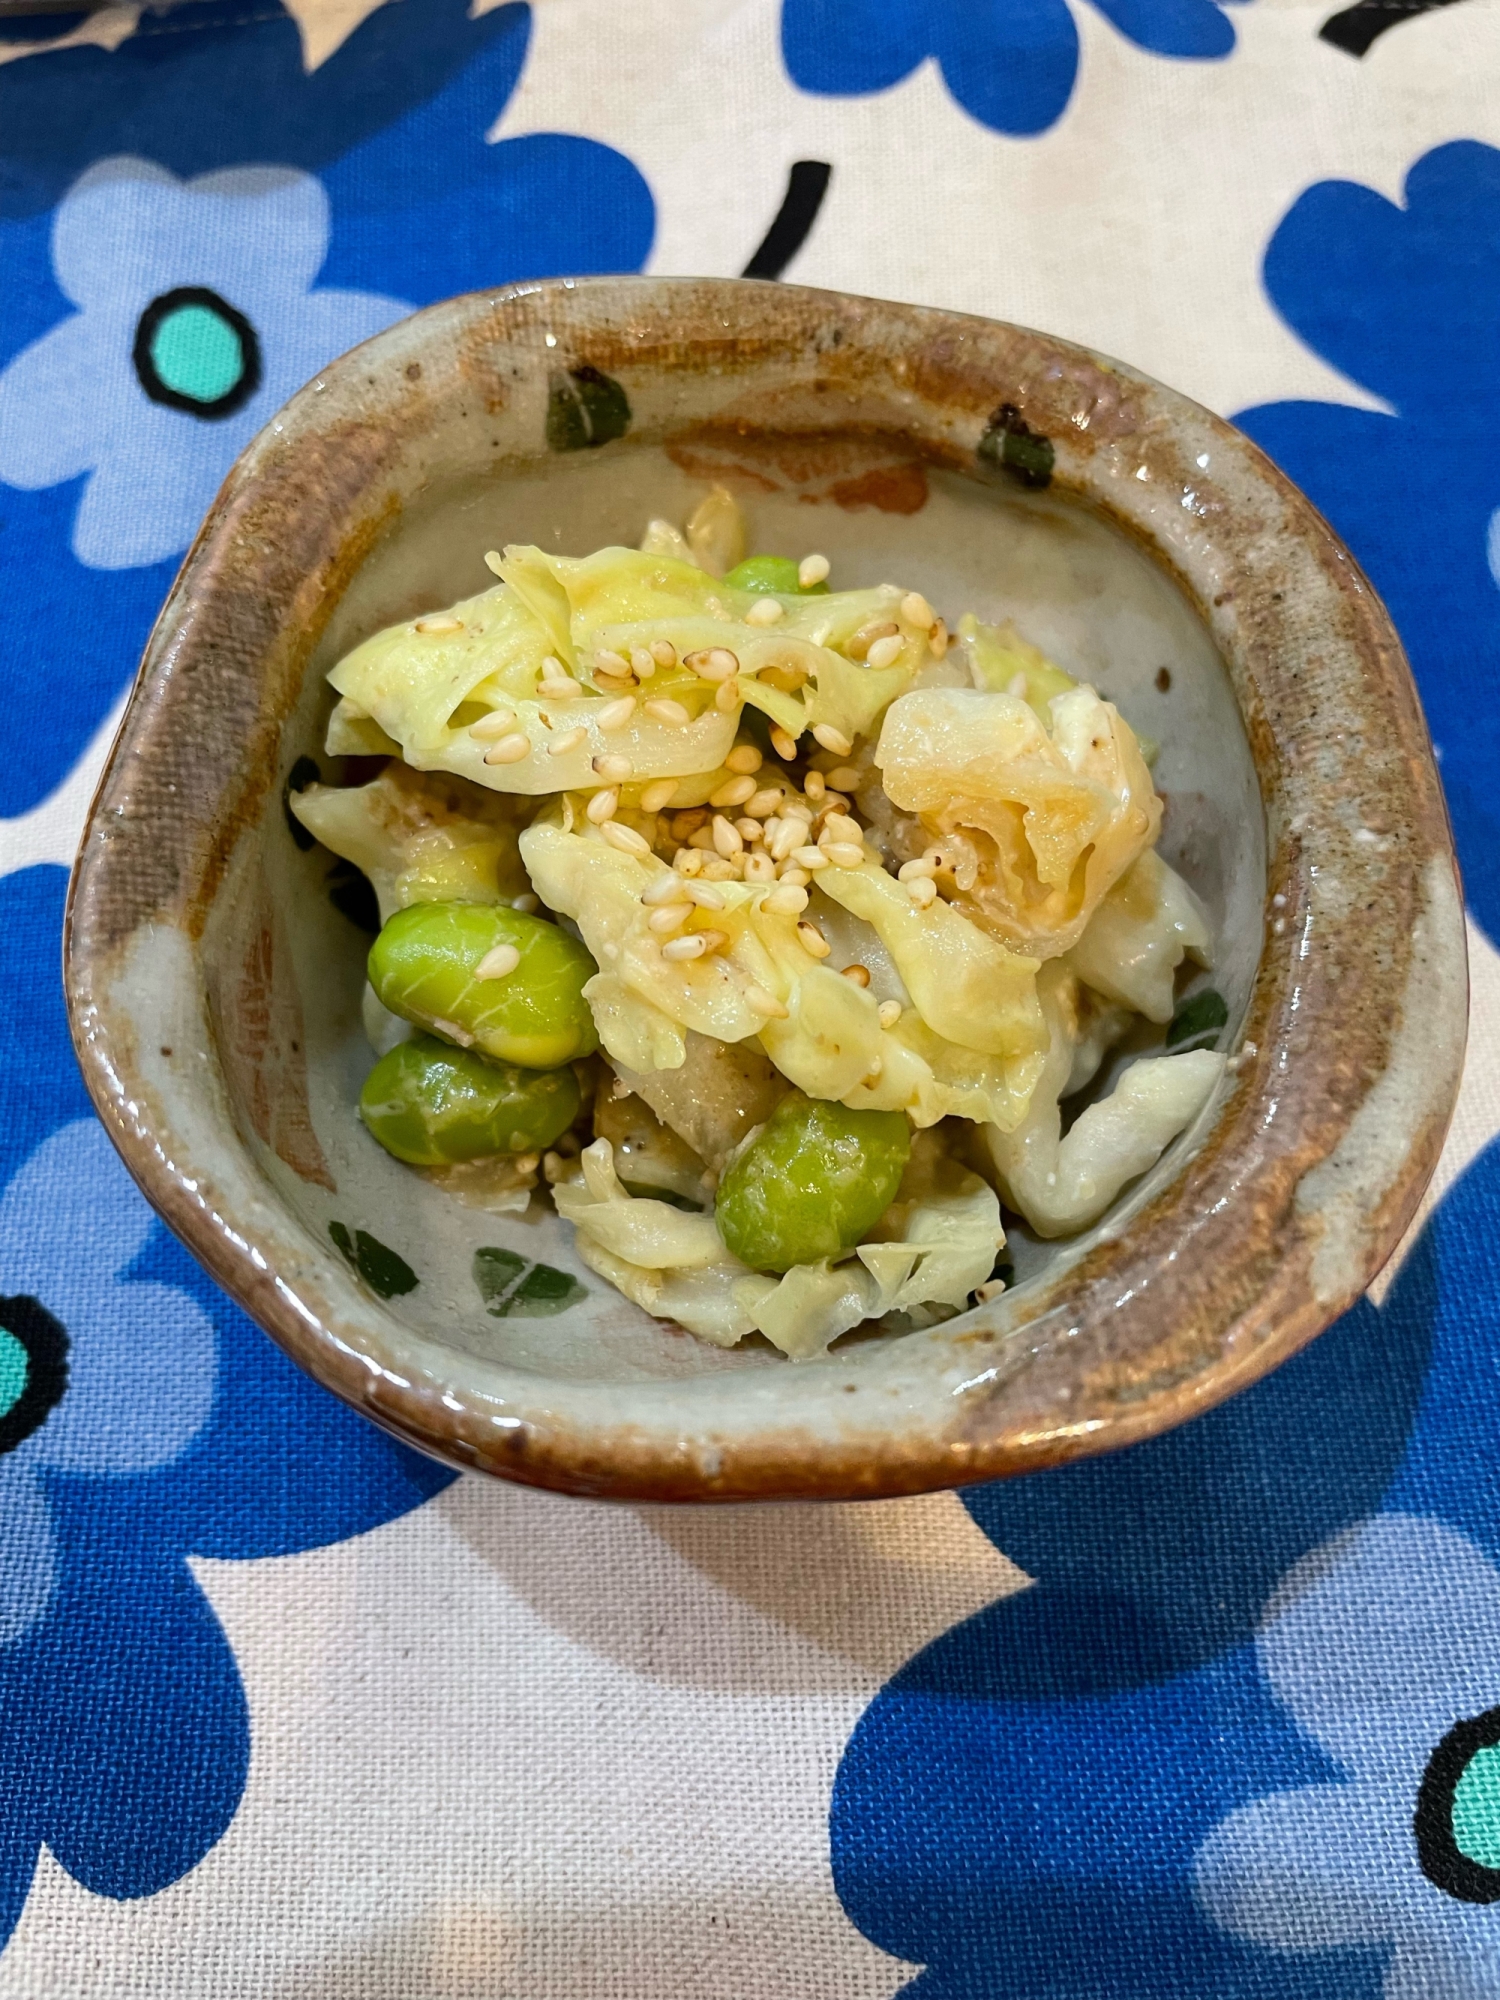 キャベツと枝豆のごまマヨ炒め☆簡単副菜